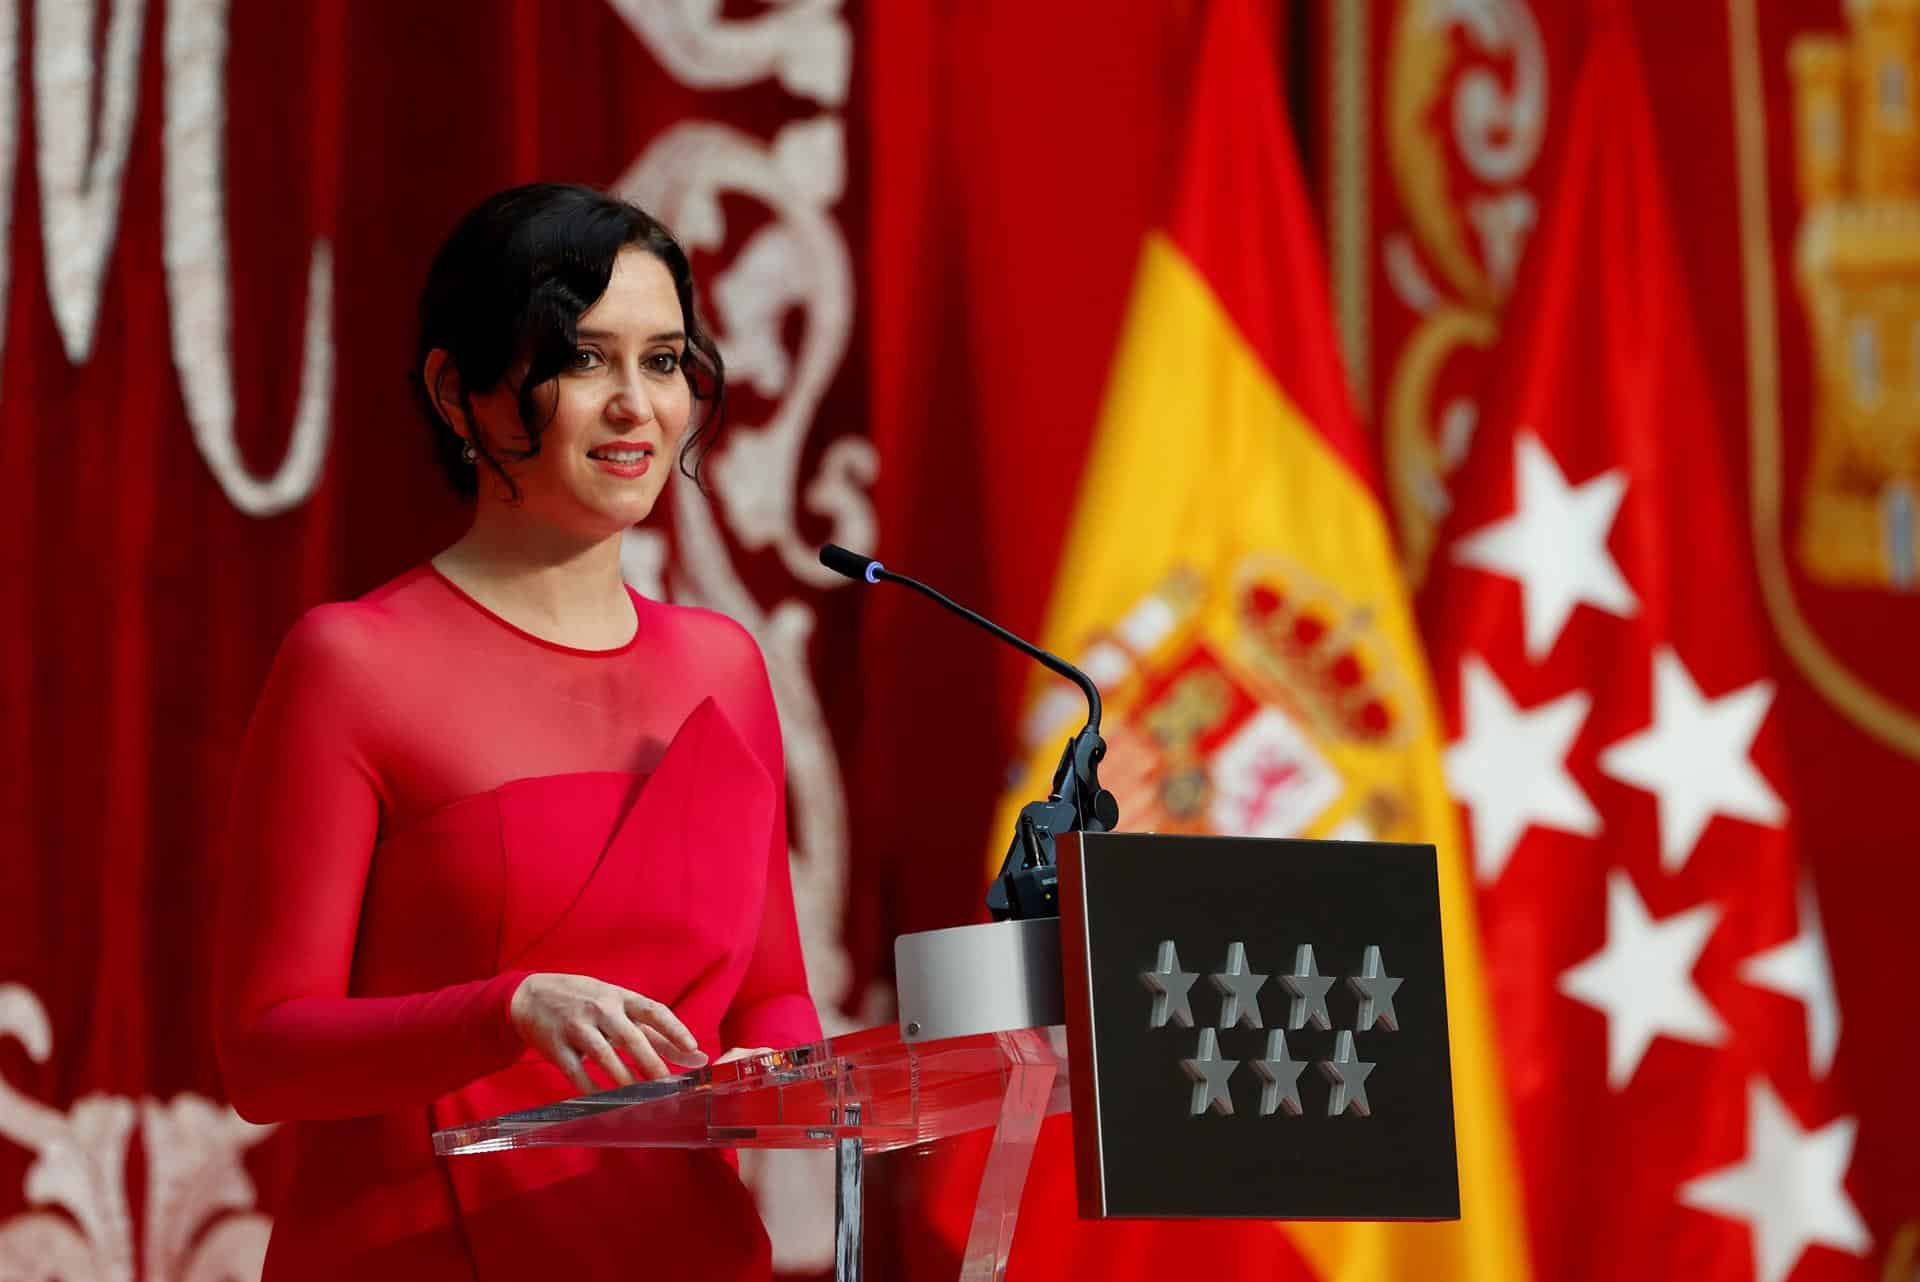 La presidenta de la Comunidad de Madrid, vestida de rojo fucsia, en su toma de posesión.